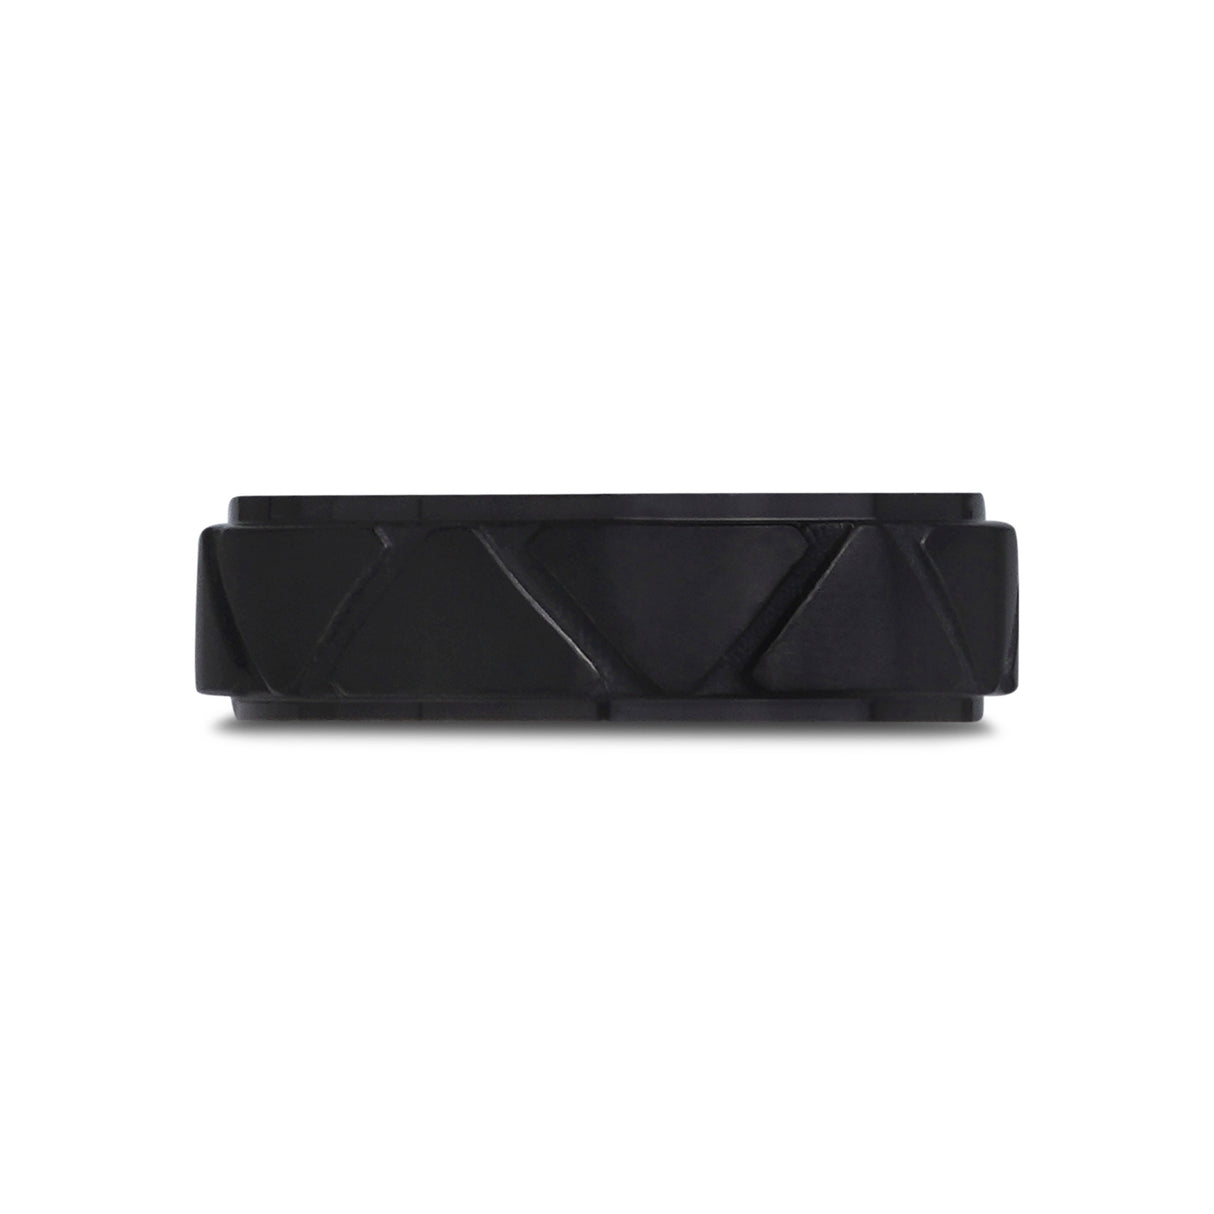 Anillo grabable de 6mm con diseño triangular y color negro